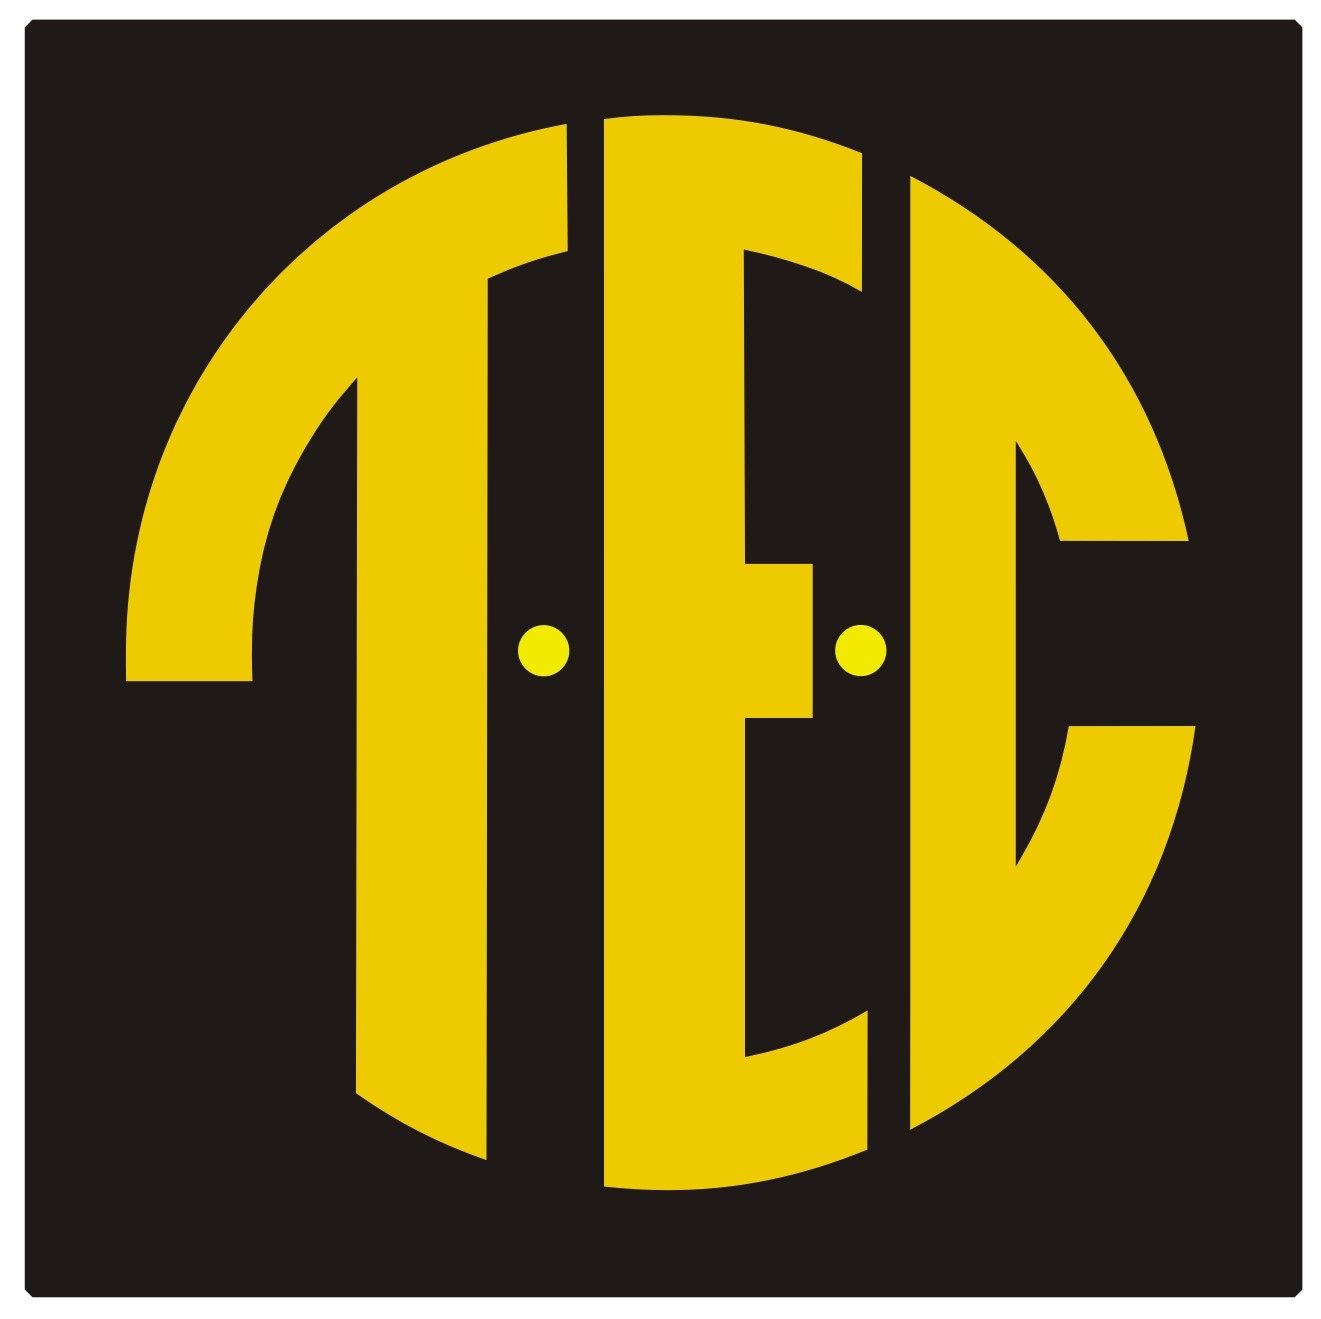 TEC logo